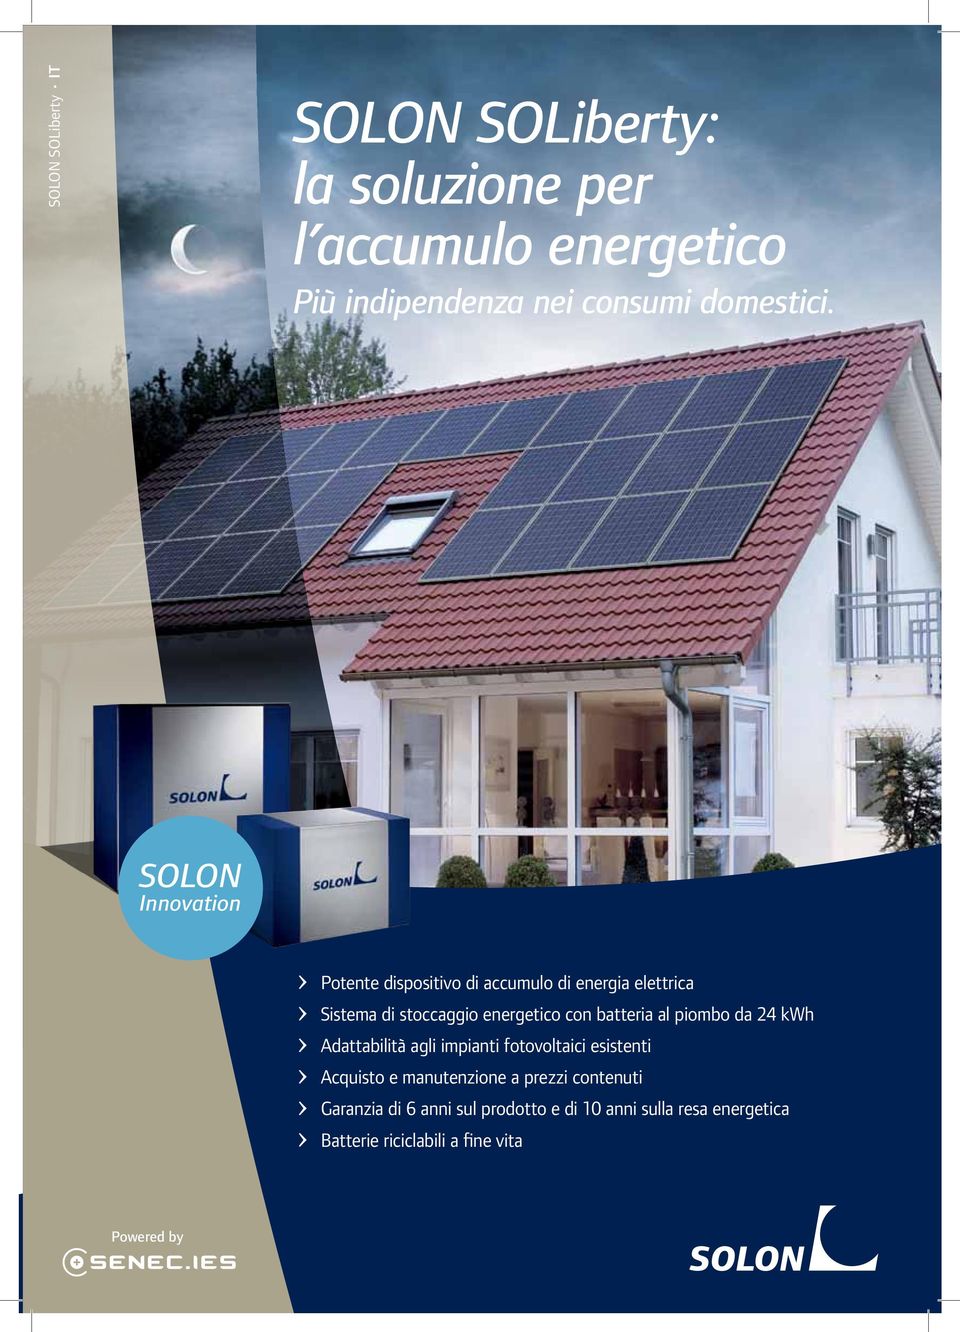 batteria al piombo da 24 kwh Adattabilità agli impianti fotovoltaici esistenti Acquisto e manutenzione a prezzi